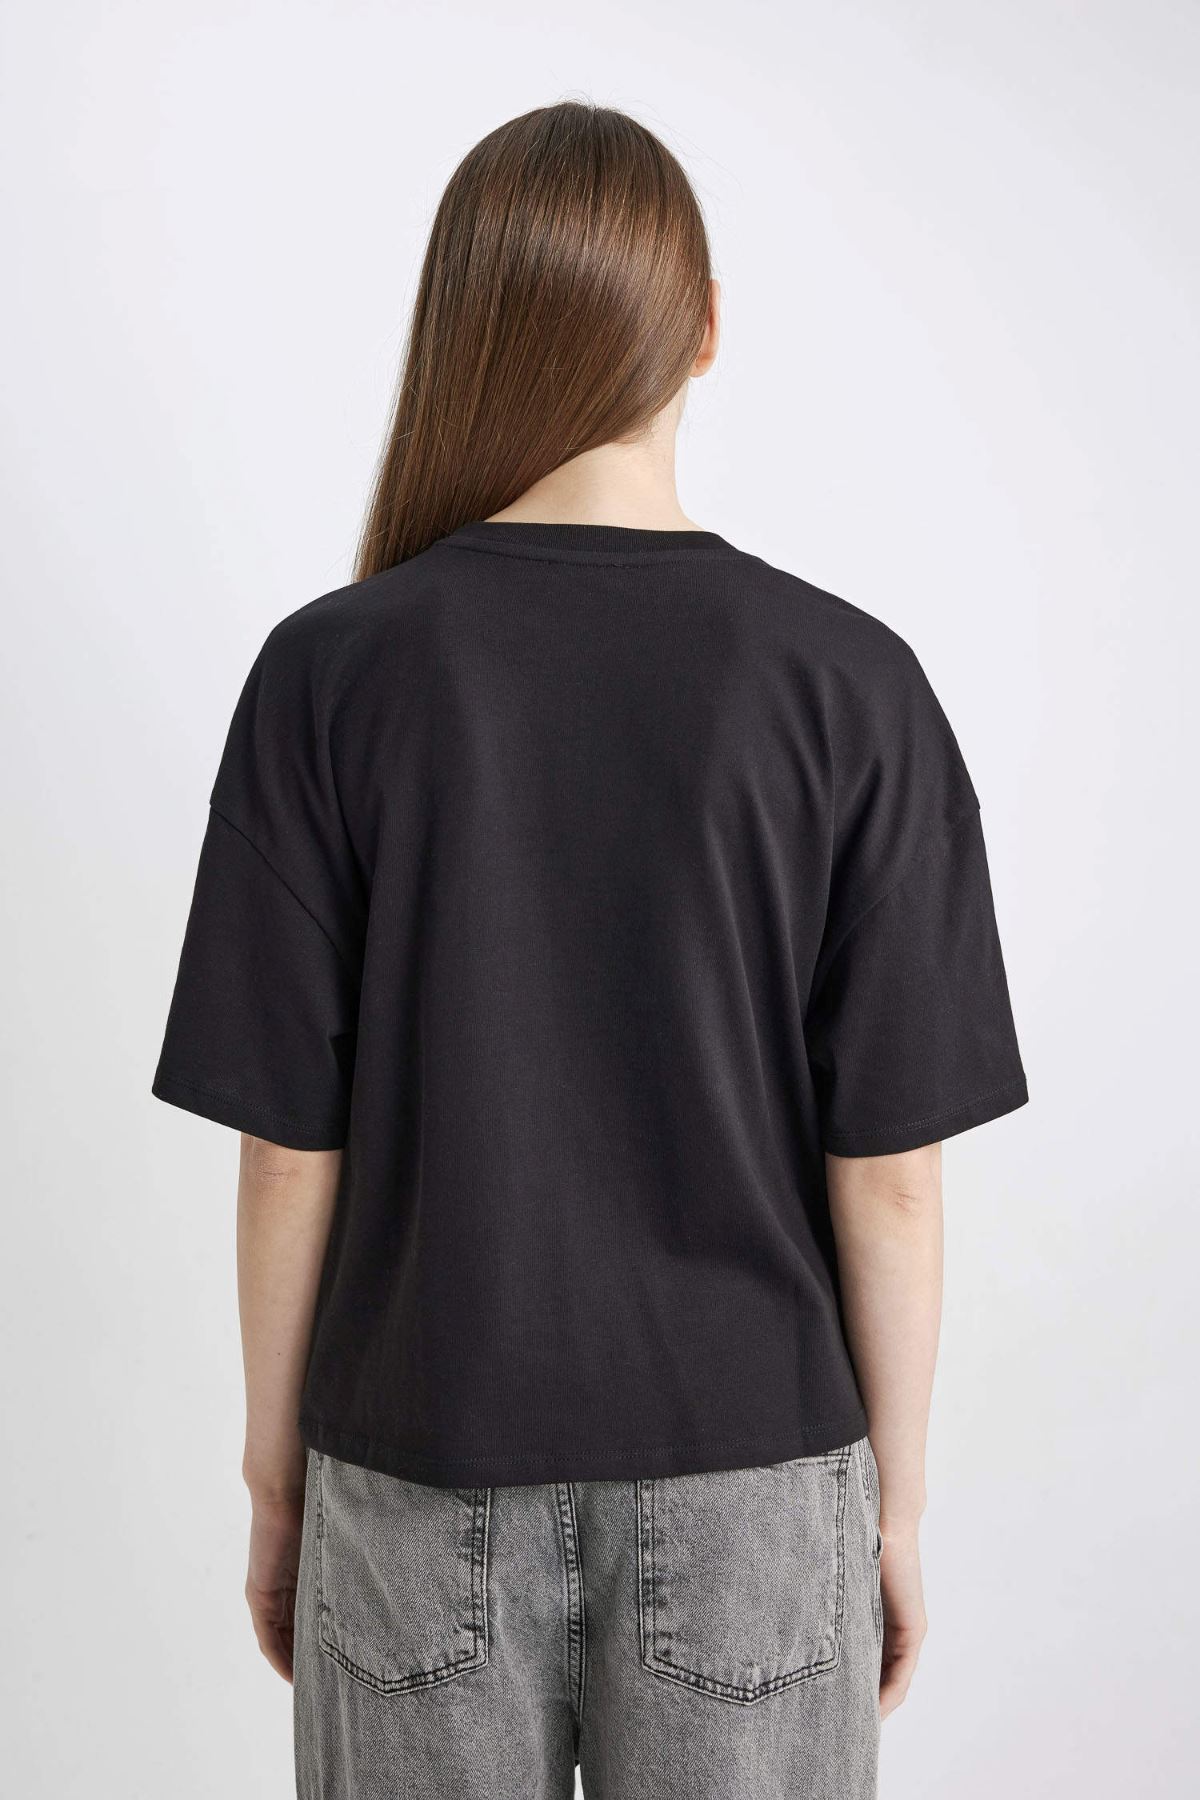 Defacto Kadın Siyah Tişört - Z9455AZ/BK81